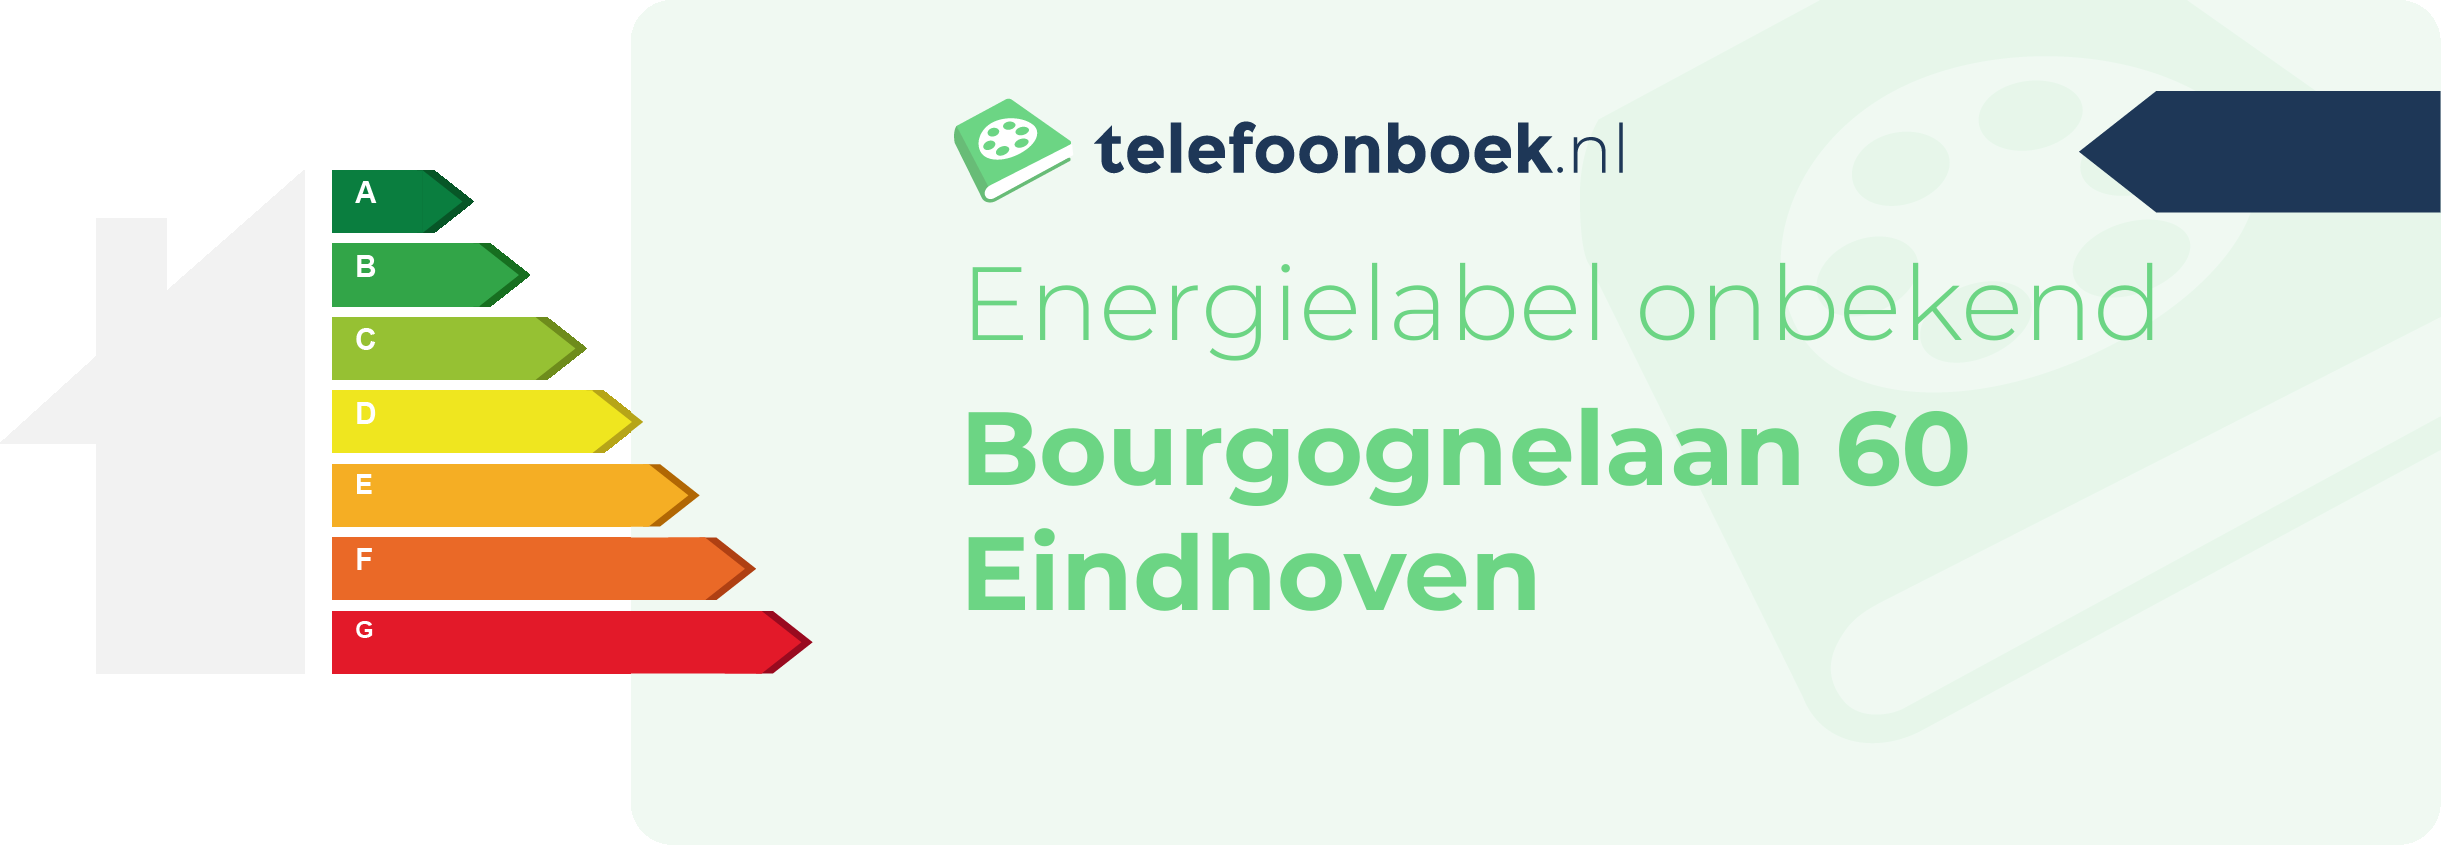 Energielabel Bourgognelaan 60 Eindhoven